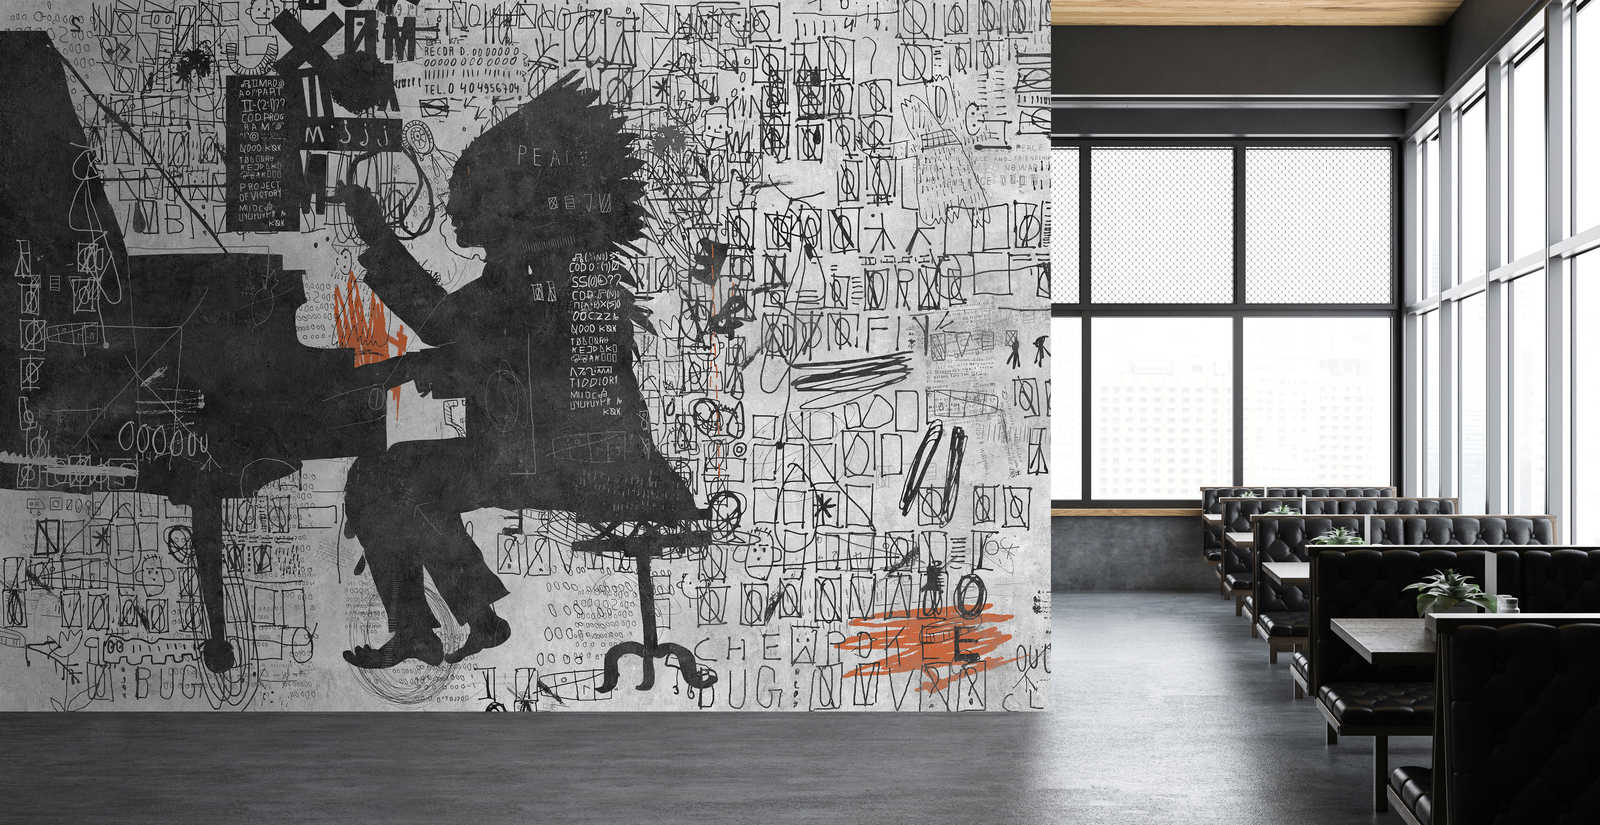             Piano Bar 1 - Papier peint Street Art Scribbel Design Noir & Gris
        